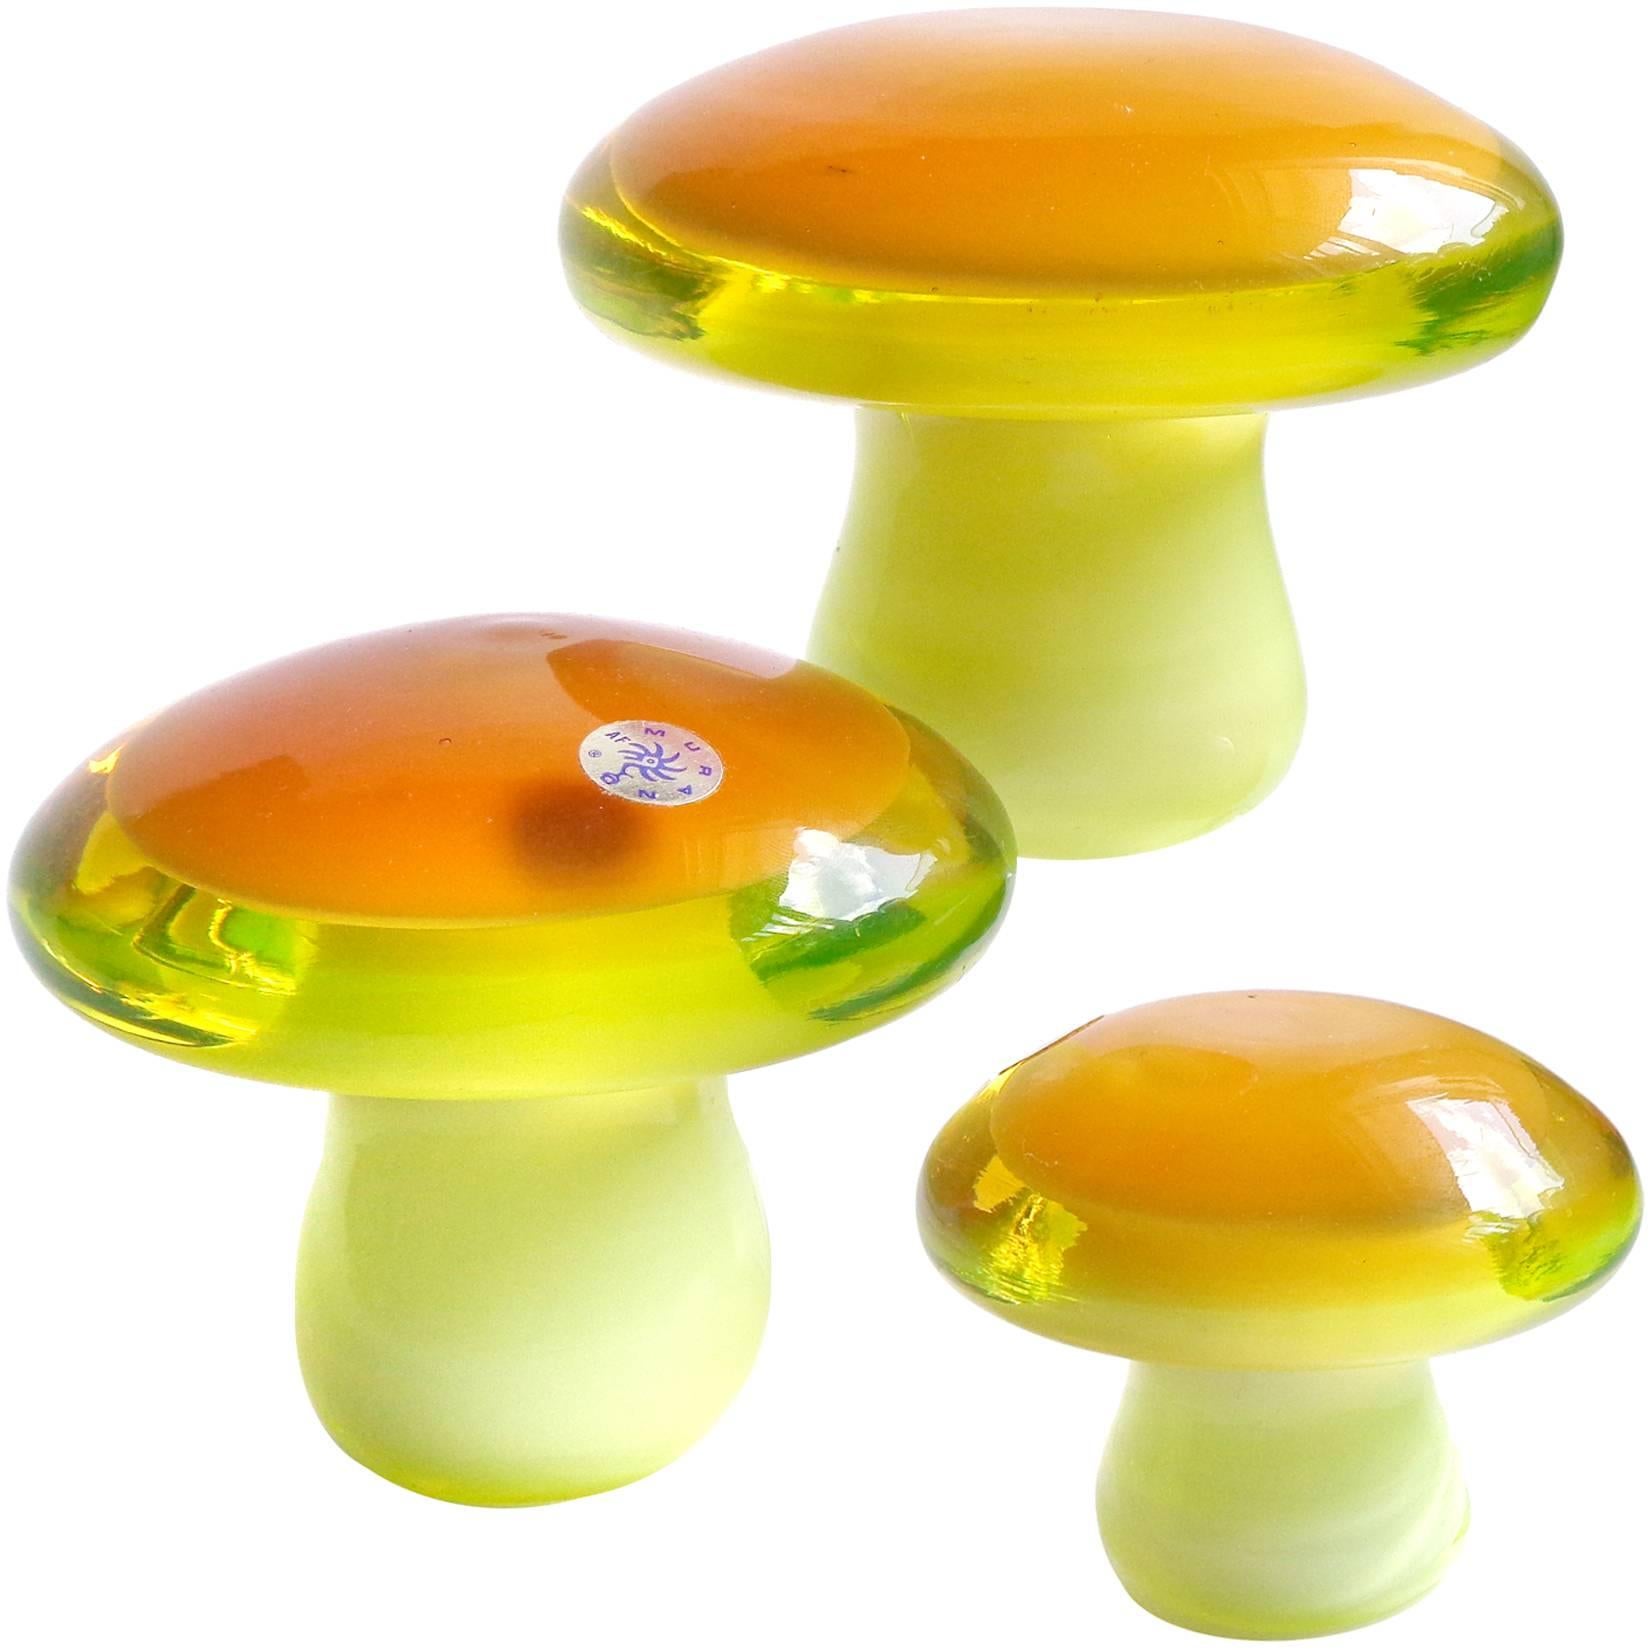 Murano Orange Yellow Uranium Italian Art Glass Mushroom Toadstool Paperweights